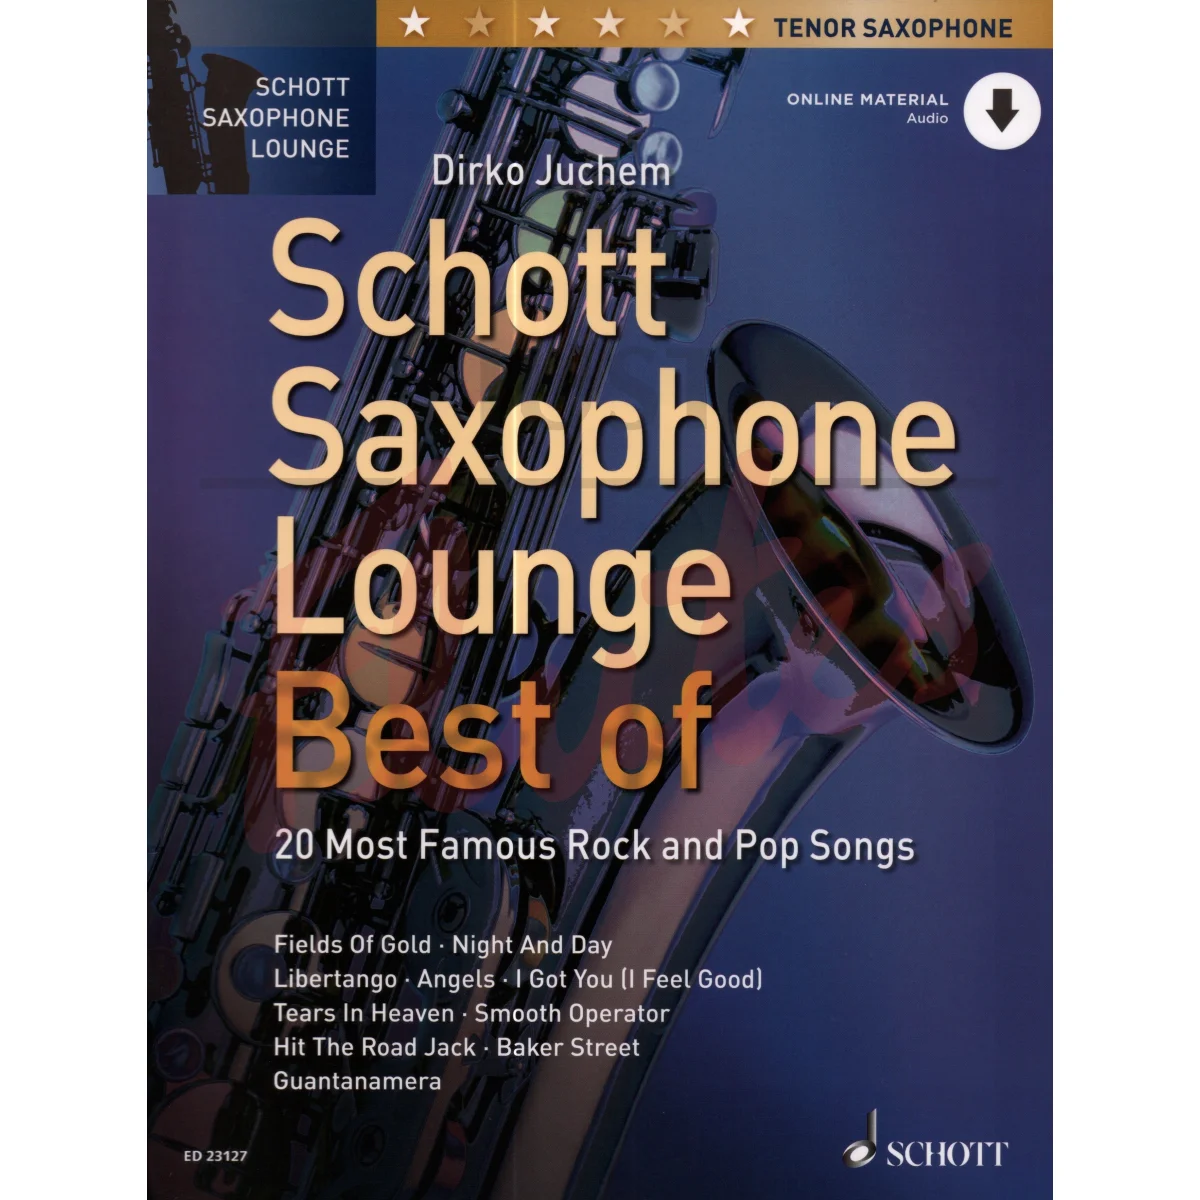 Schott Saxophone Lounge: Best Of for Tenor Saxophone